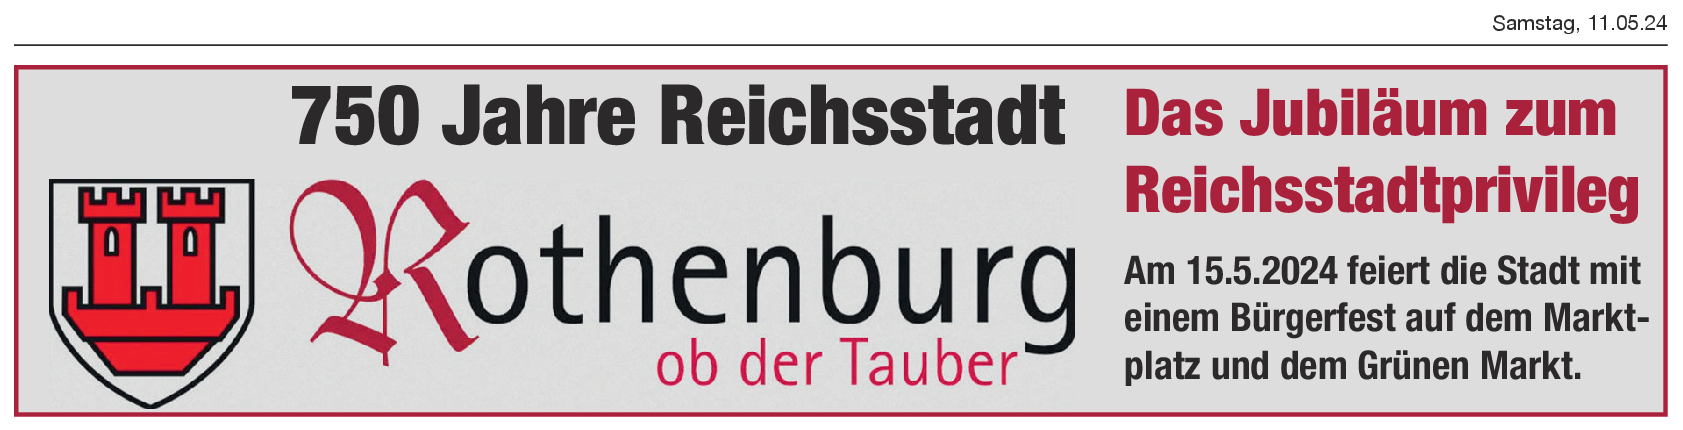 Rothenburger Reichsstadtfesttage: 6. September bis 8. September 2024